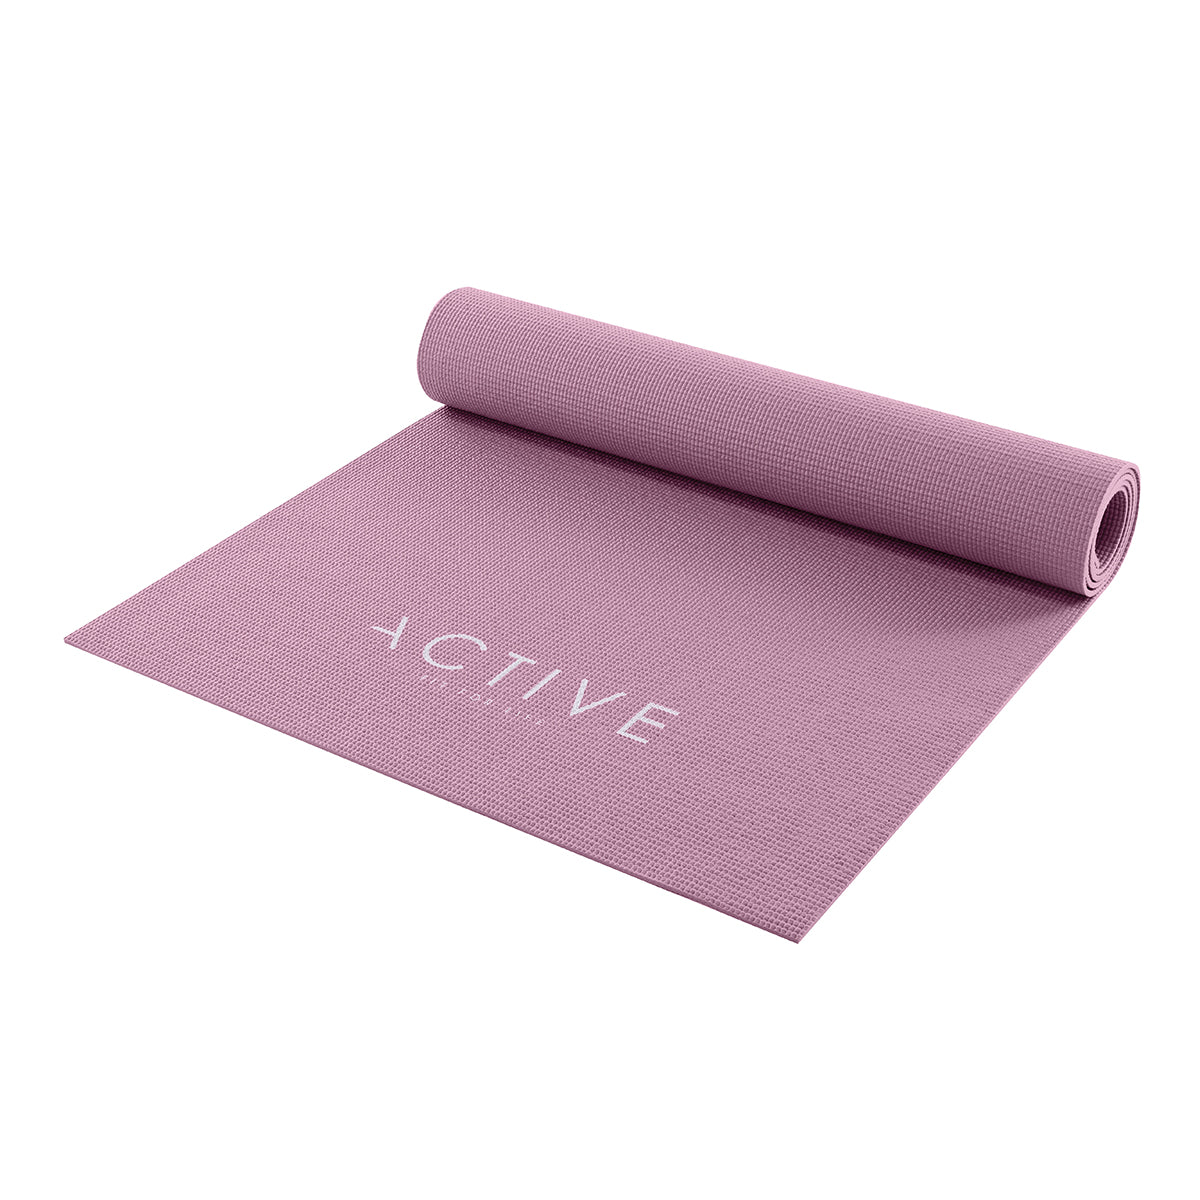 Active yoga mat 01